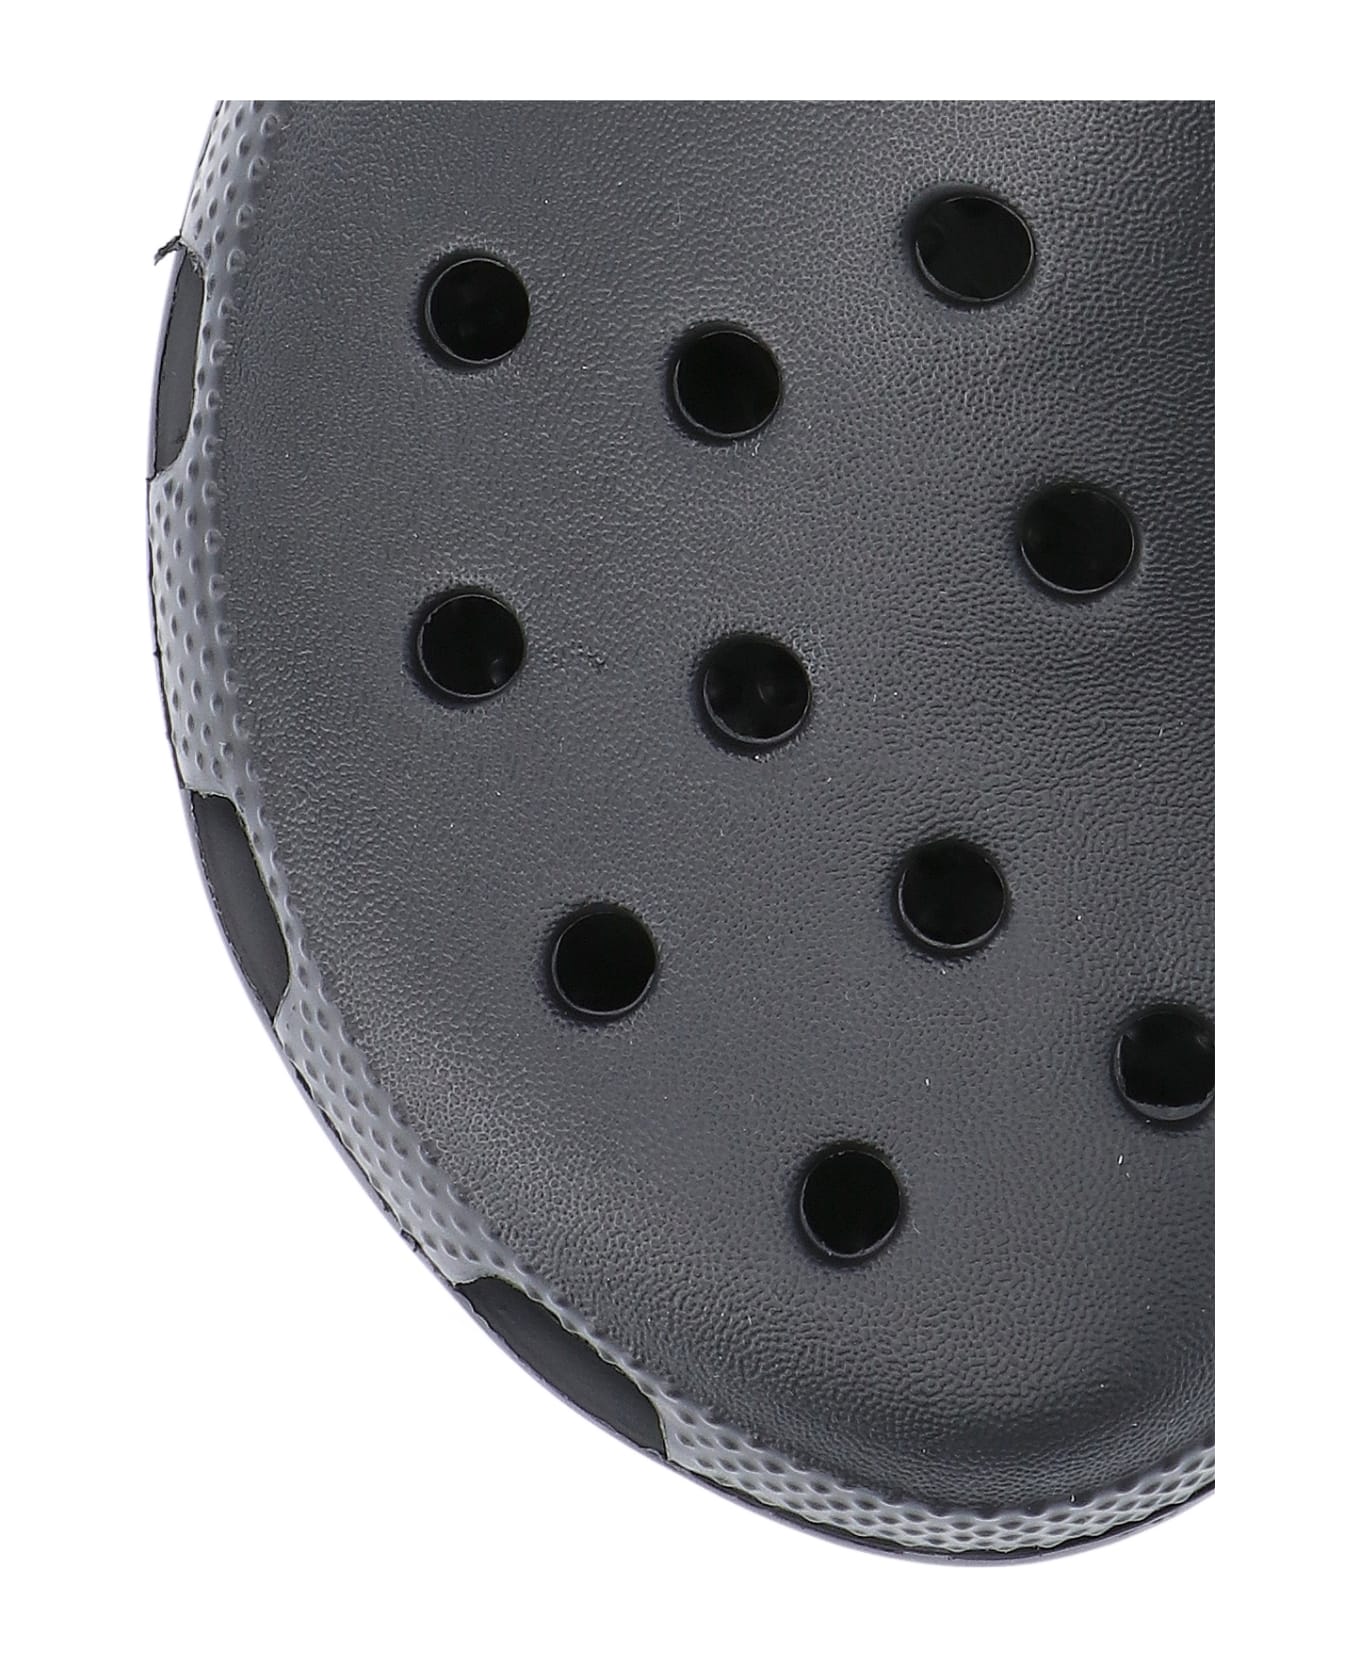 Crocs 'classic' Mules - Black  